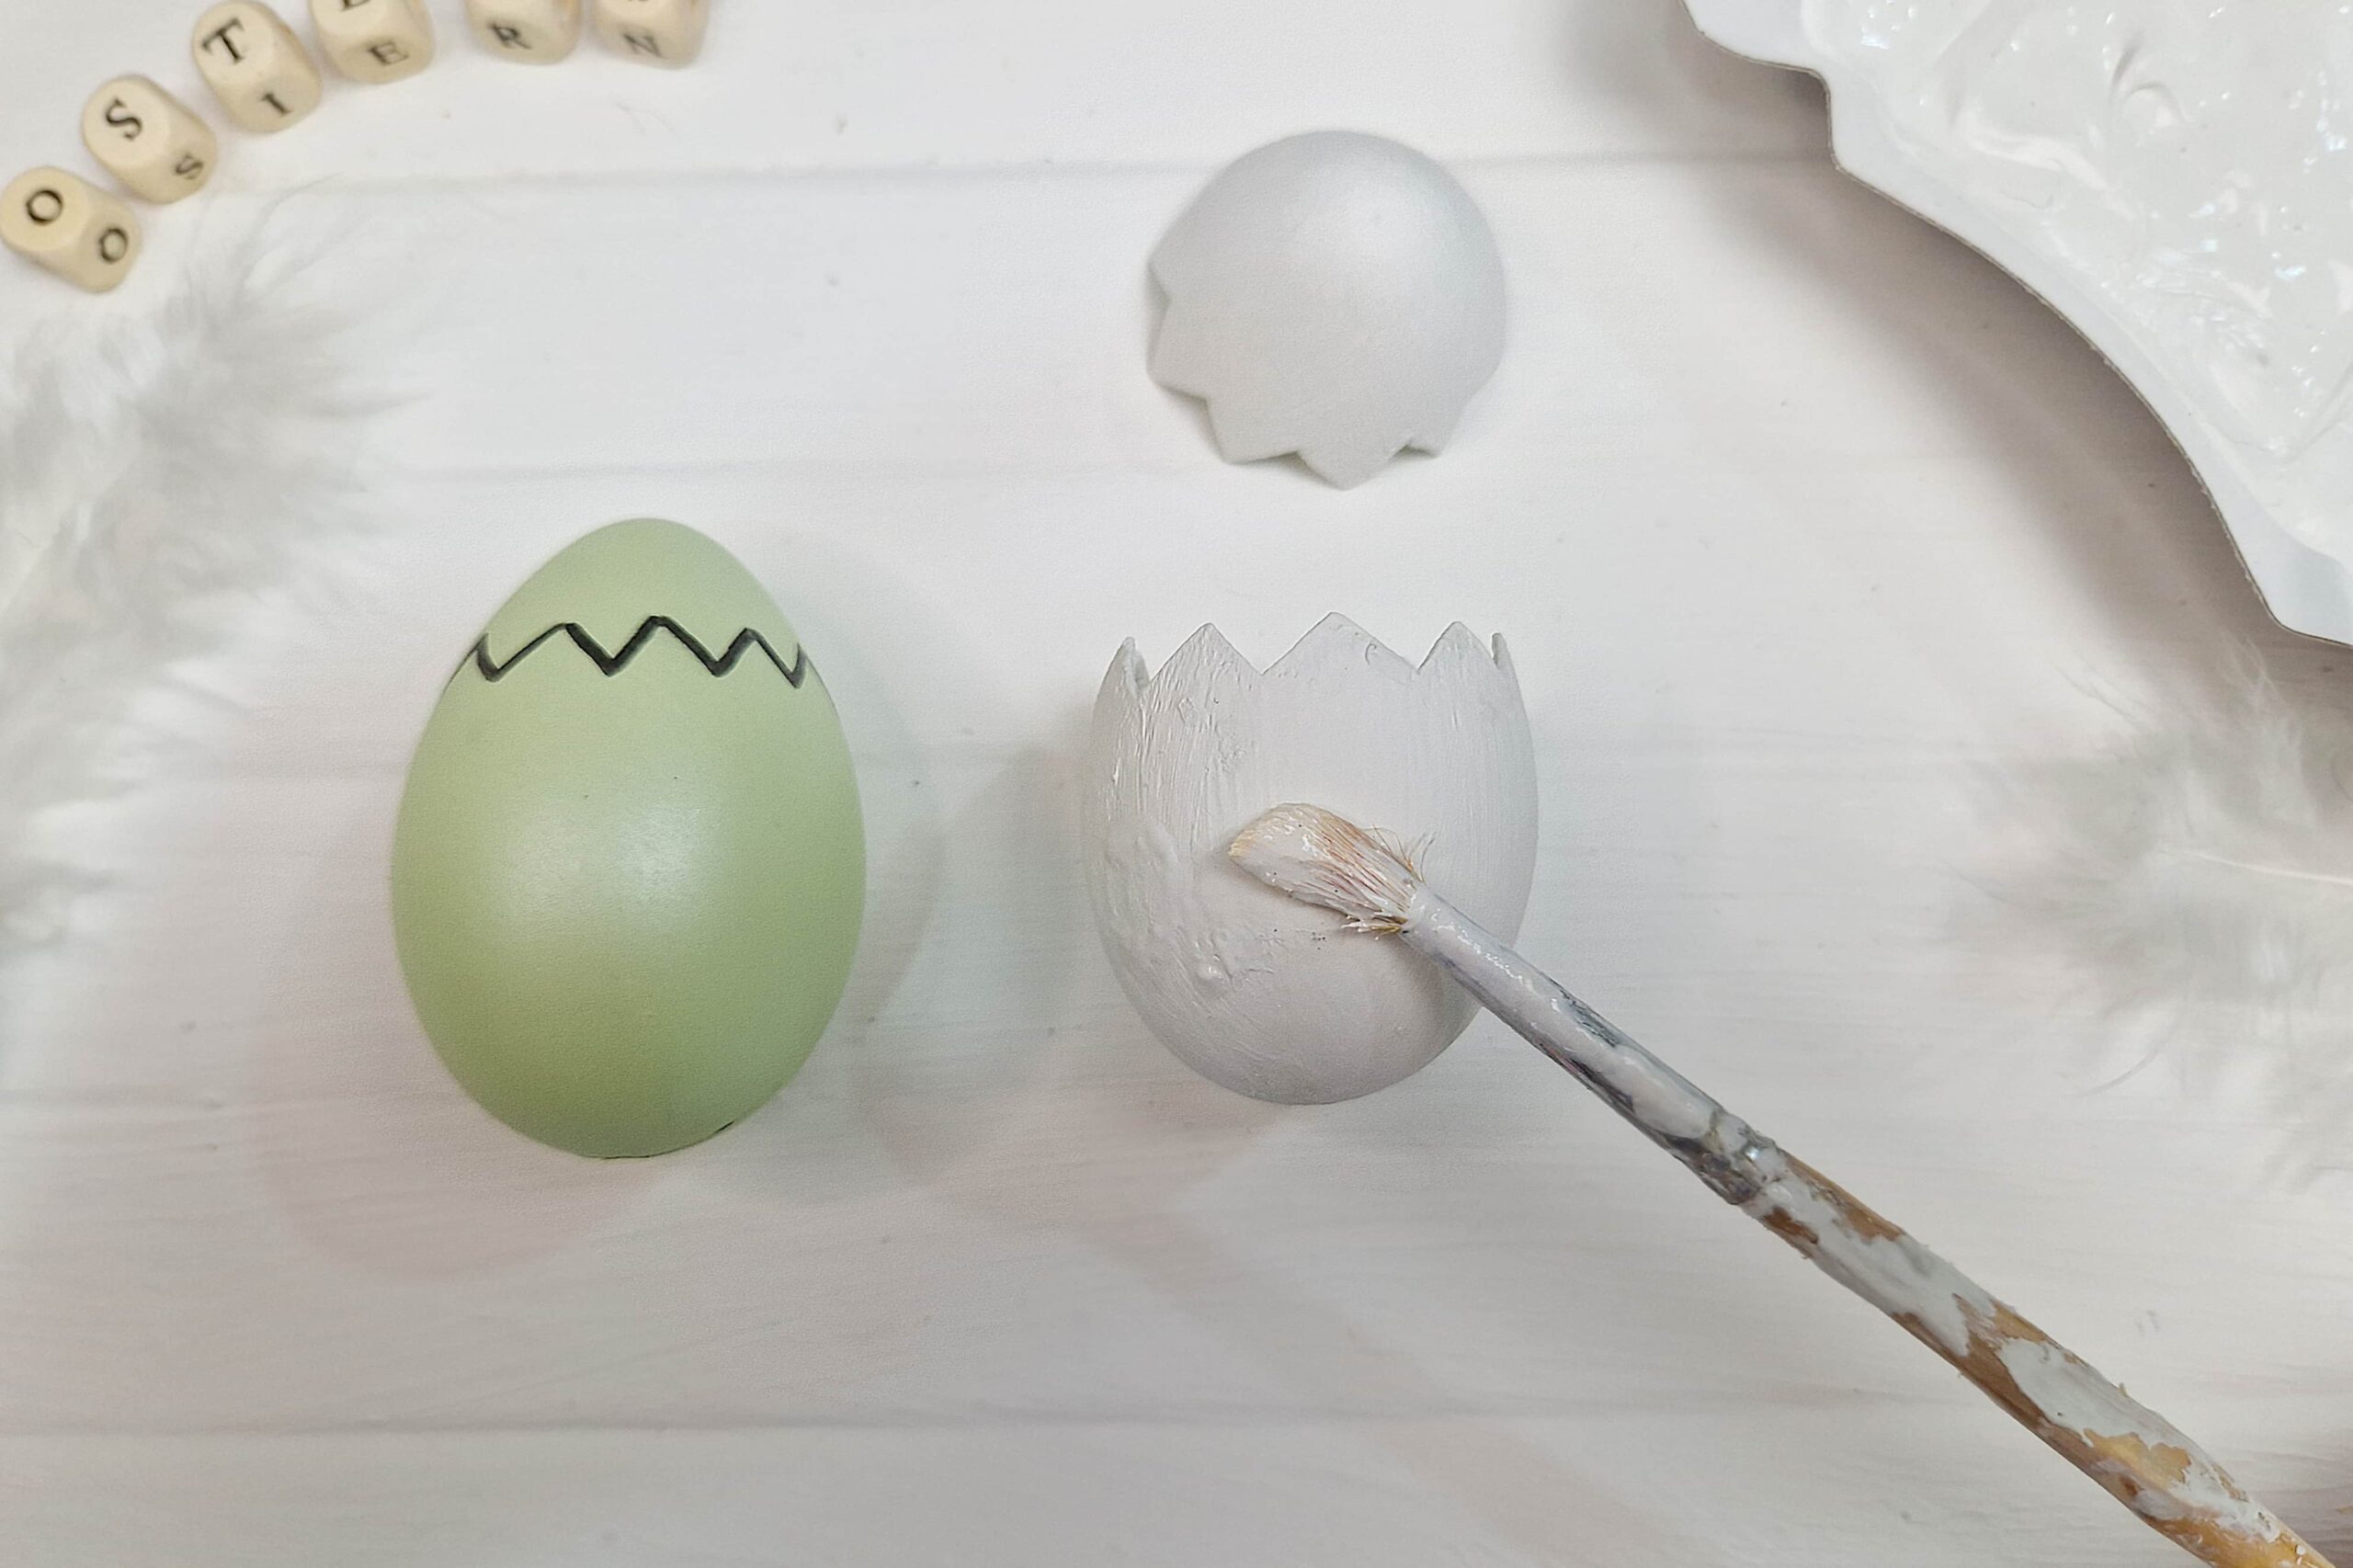 Die DIY Idee zeigt wie ein Ei bemalt wird um daraus ein DIY Küken in Eierschale zu basteln.